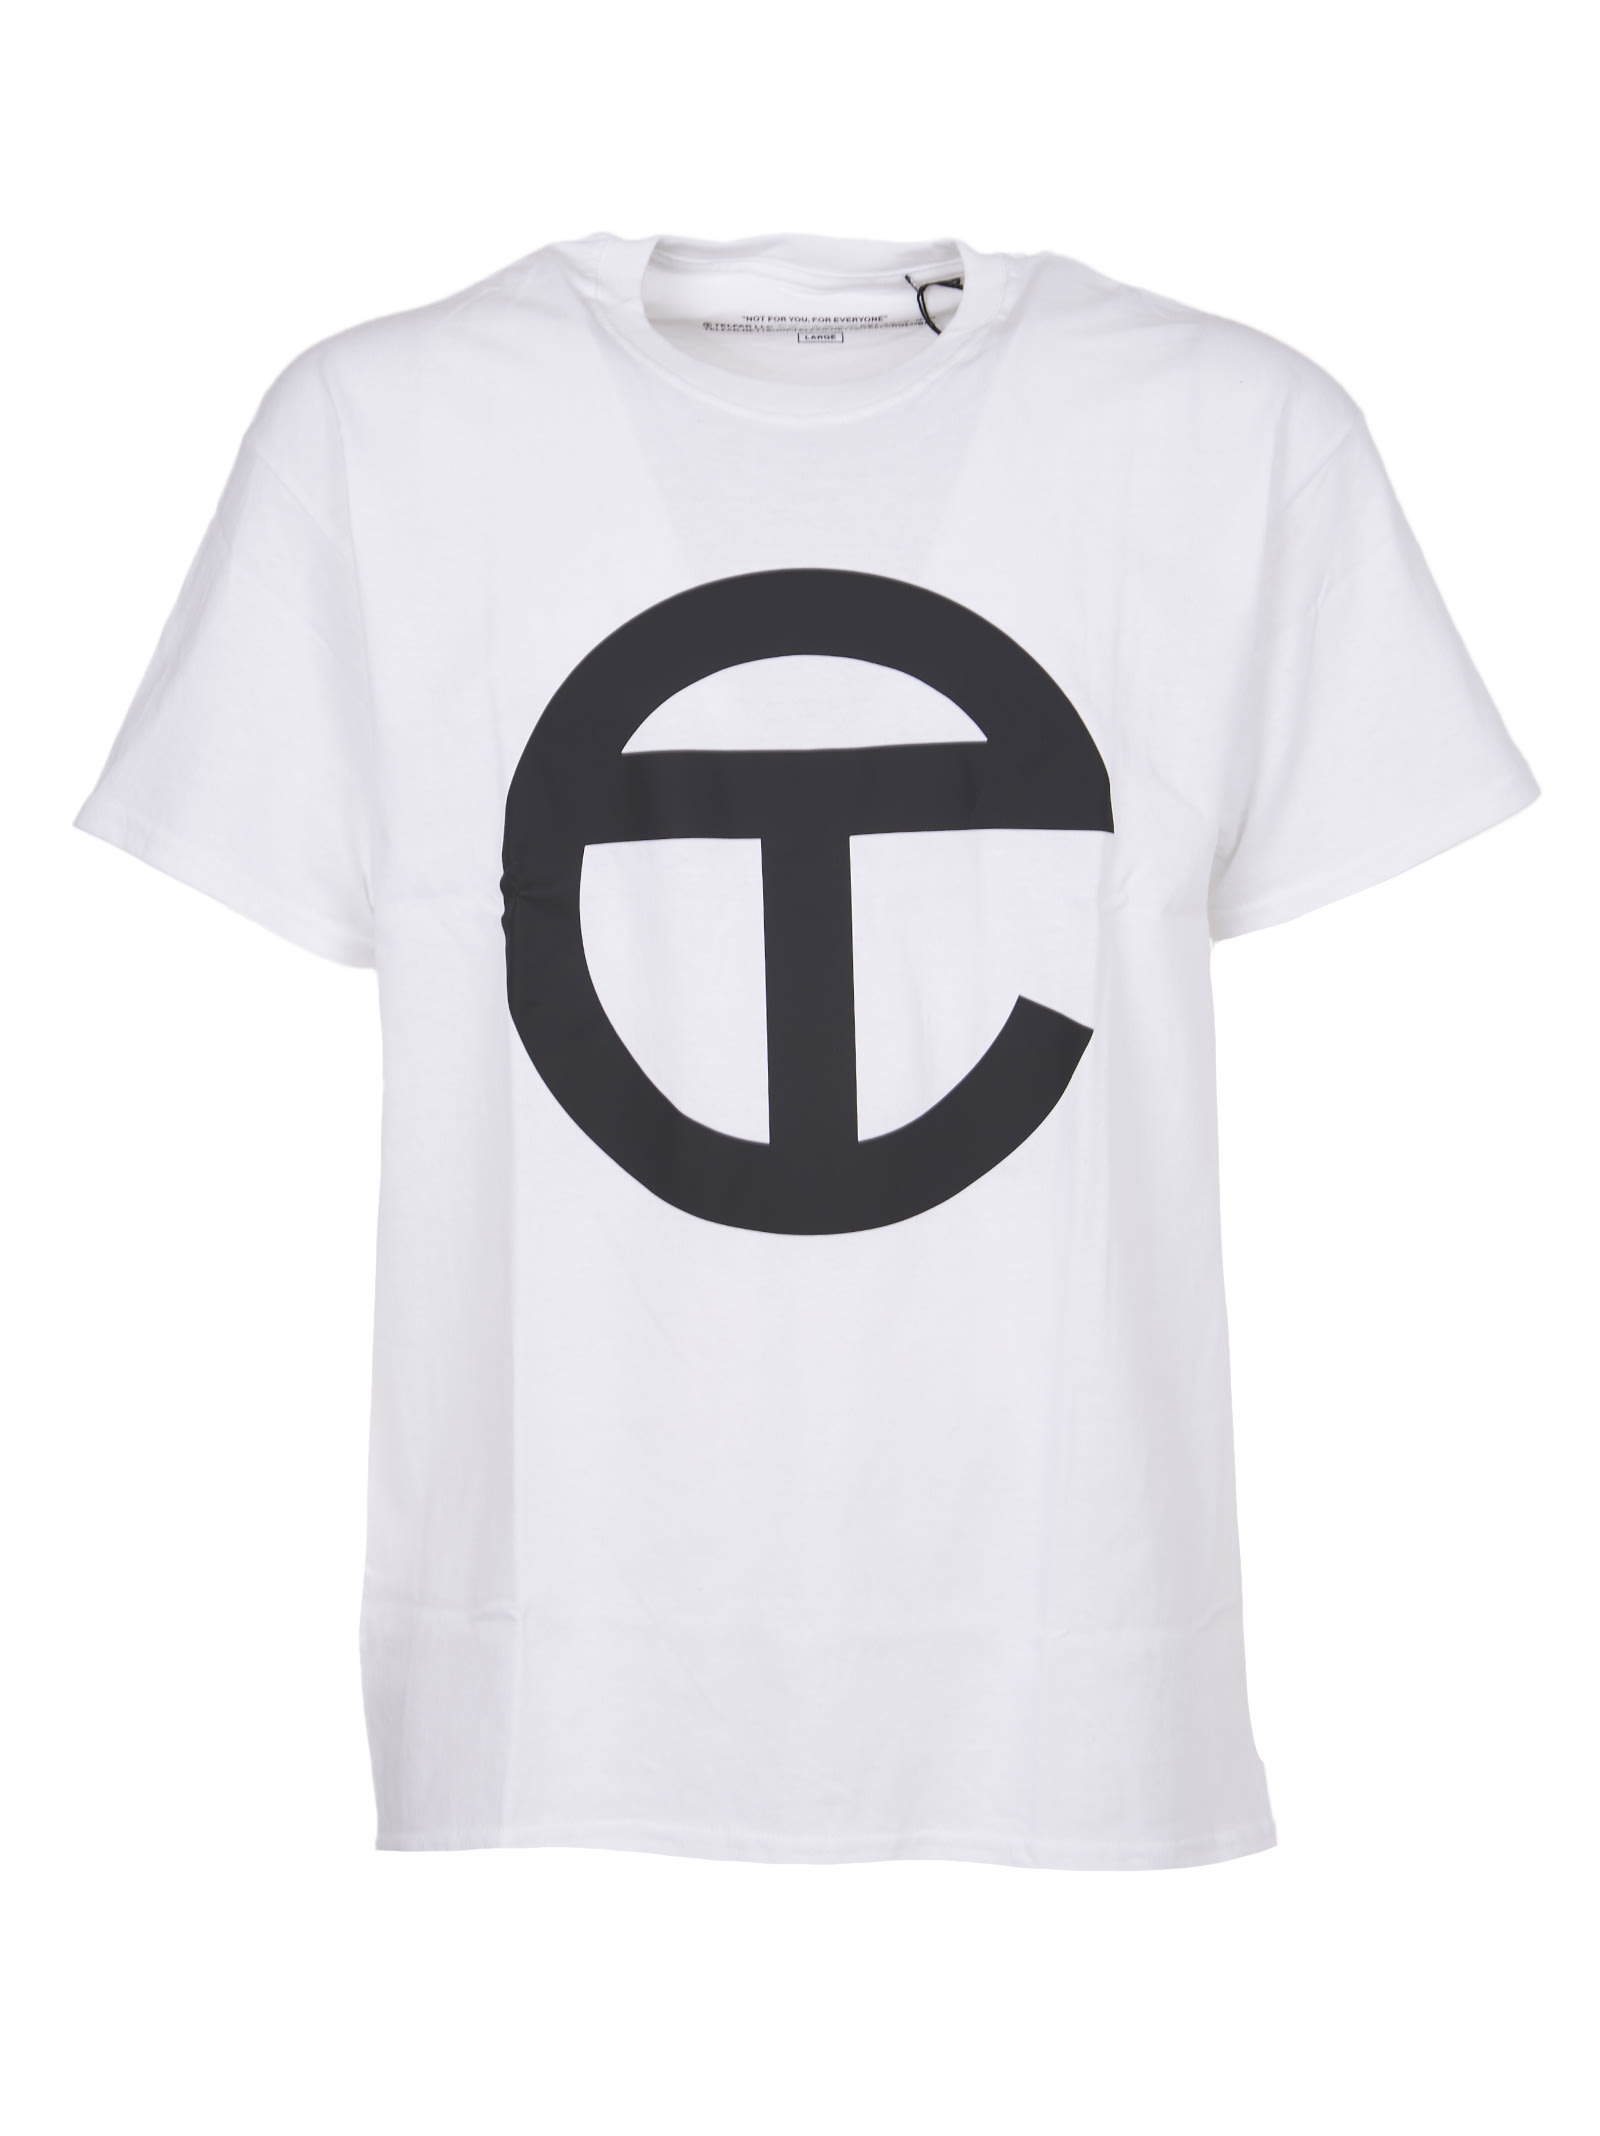 Telfar White T-shirt With Logo